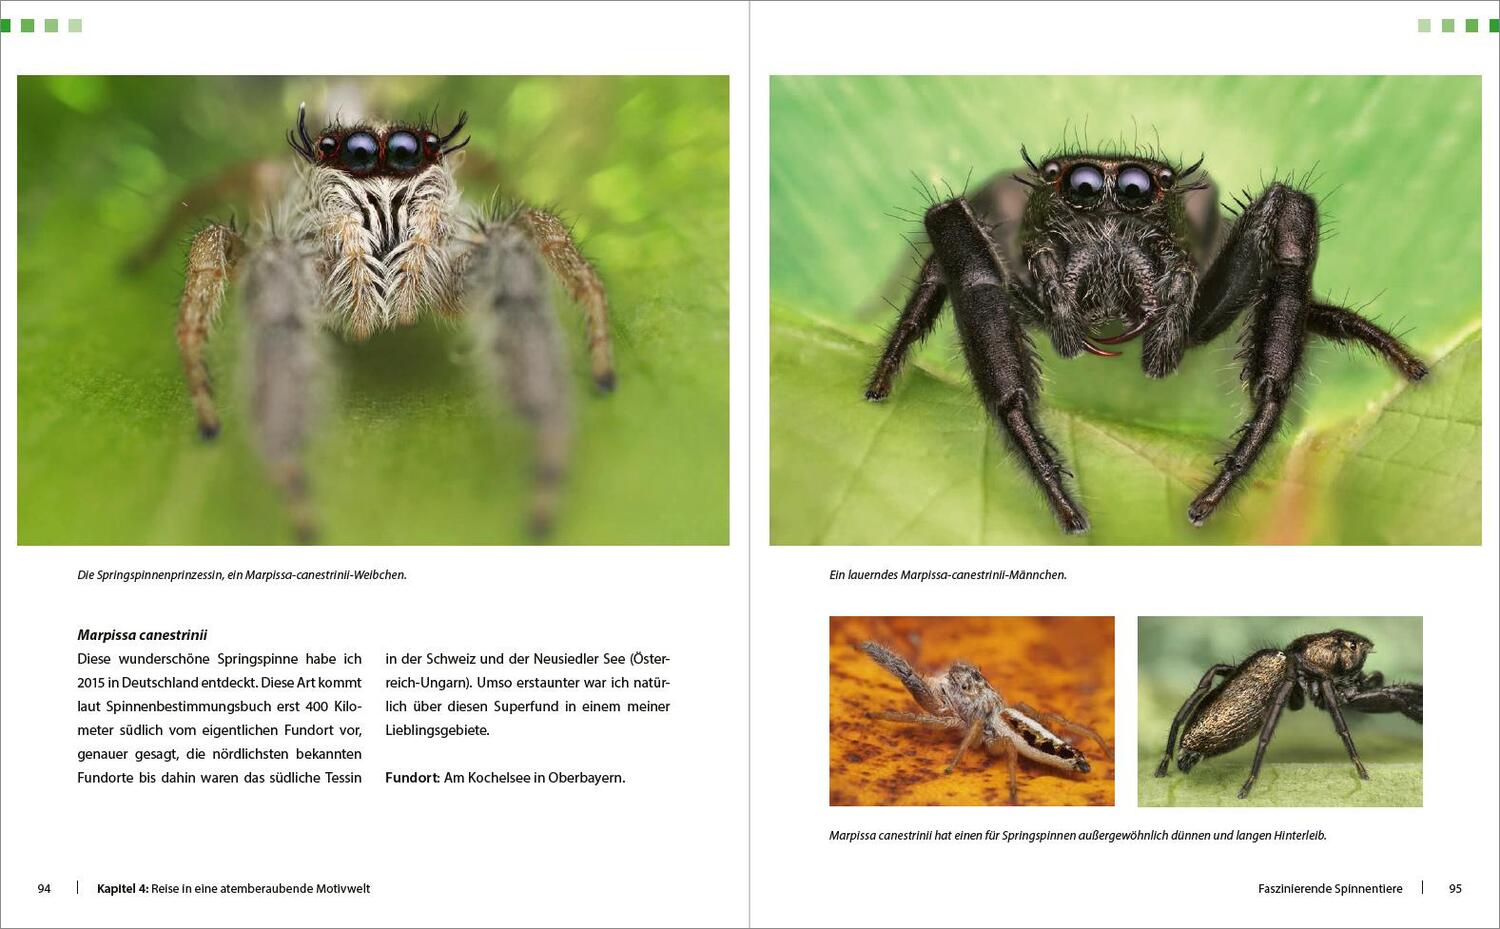 Bild: 9783832803445 | Extreme Wildlife-Makrofotografie | Alexander Mett | Buch | 288 S.